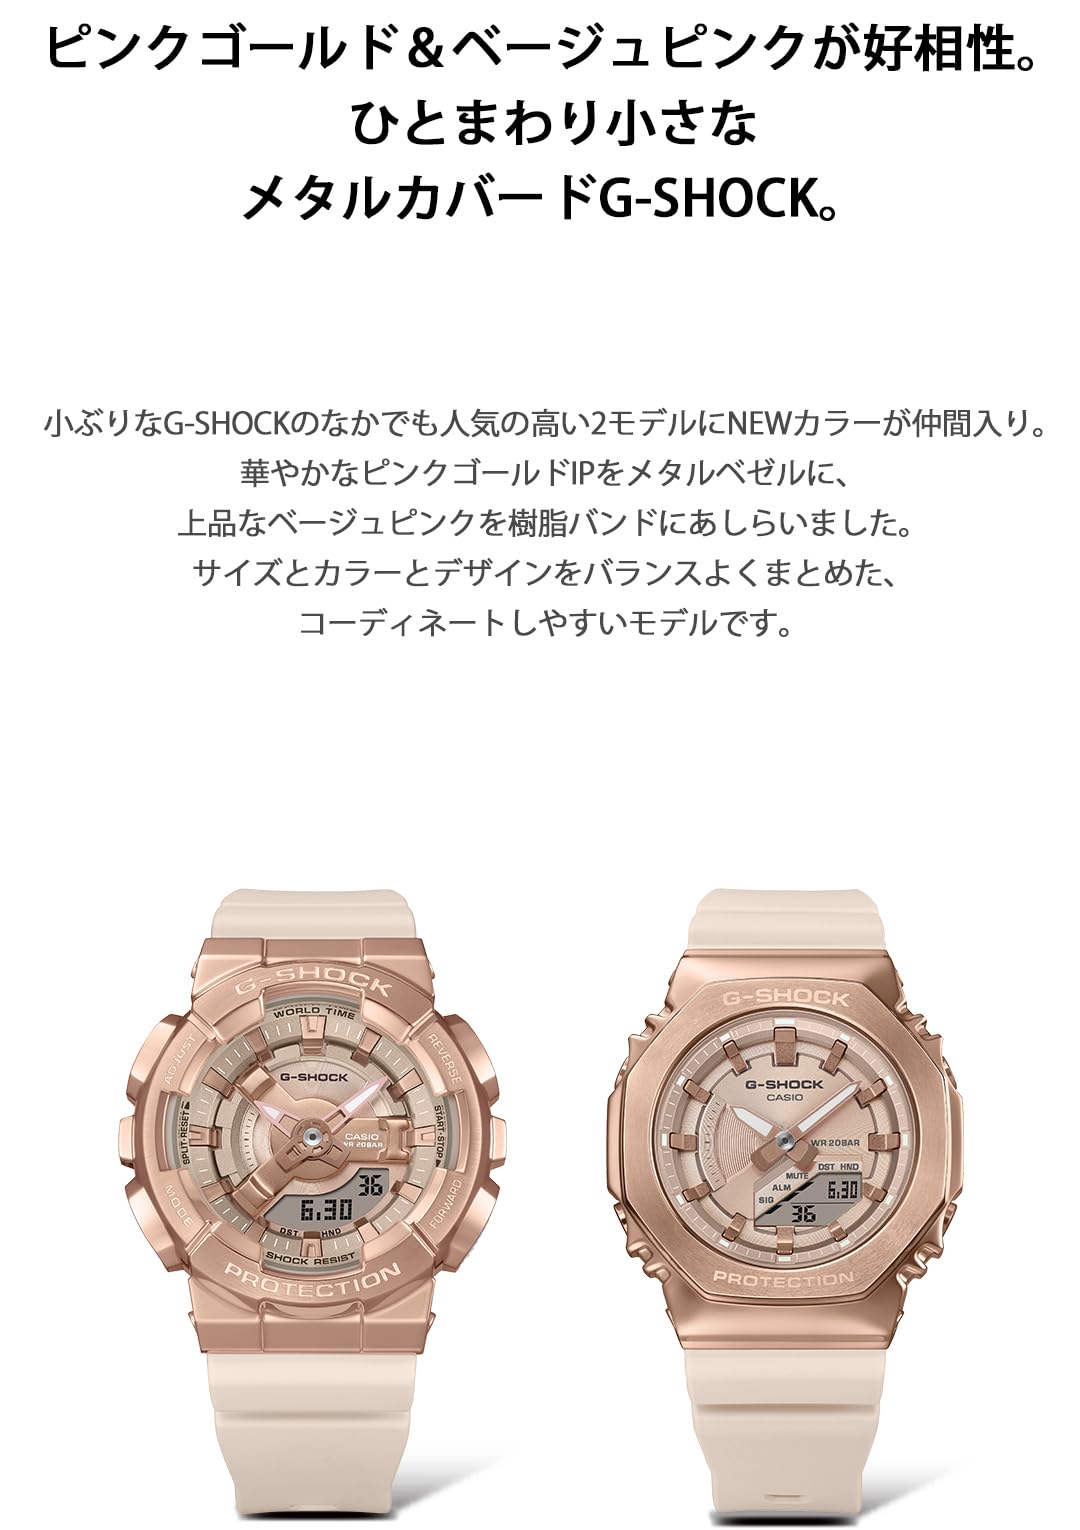 [カシオ] 腕時計 ジーショック 【国内正規品】 ミッドサイズモデル メタルカバード GM-S2100PG-4AJF レディース ピンクベージュ - BanzaiHobby